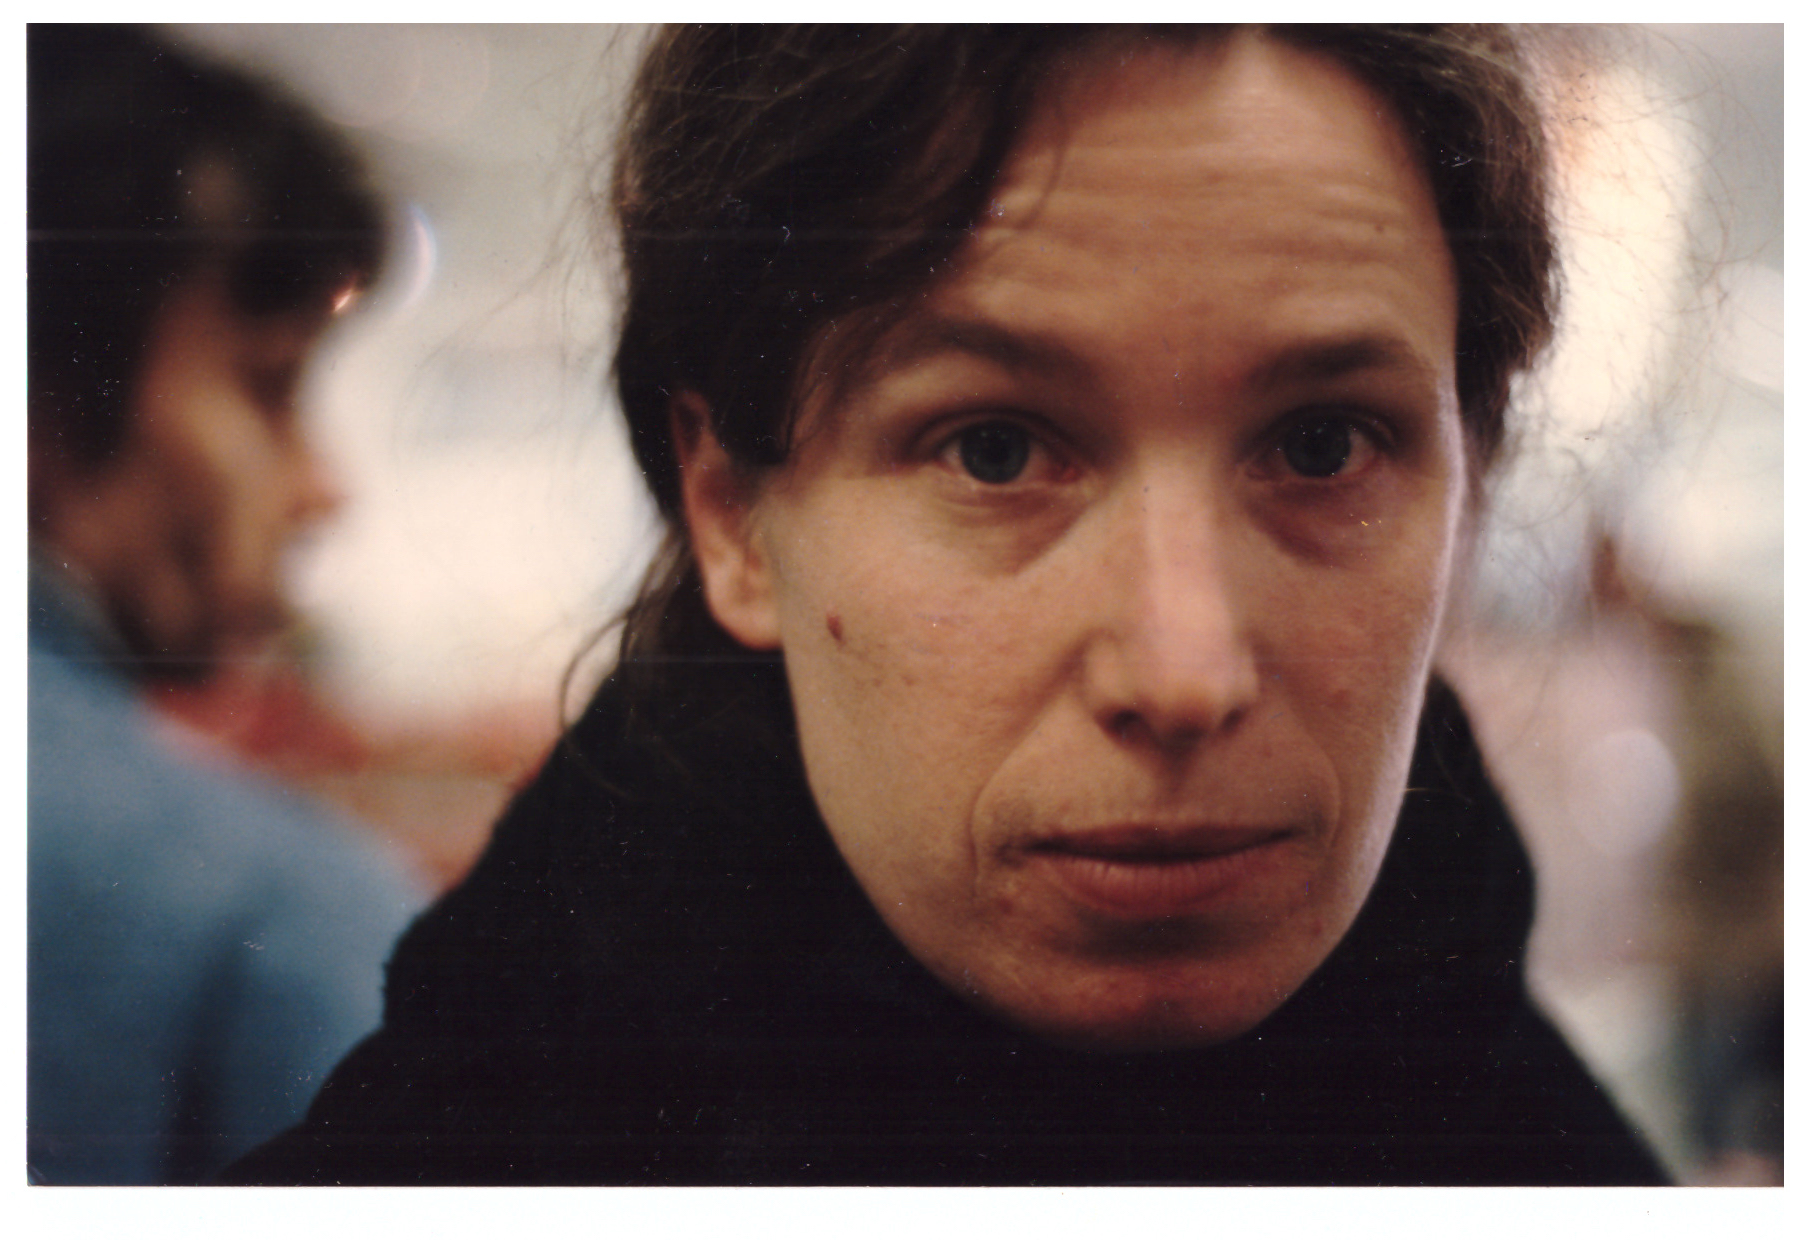  Cecilia Wendt 1994 